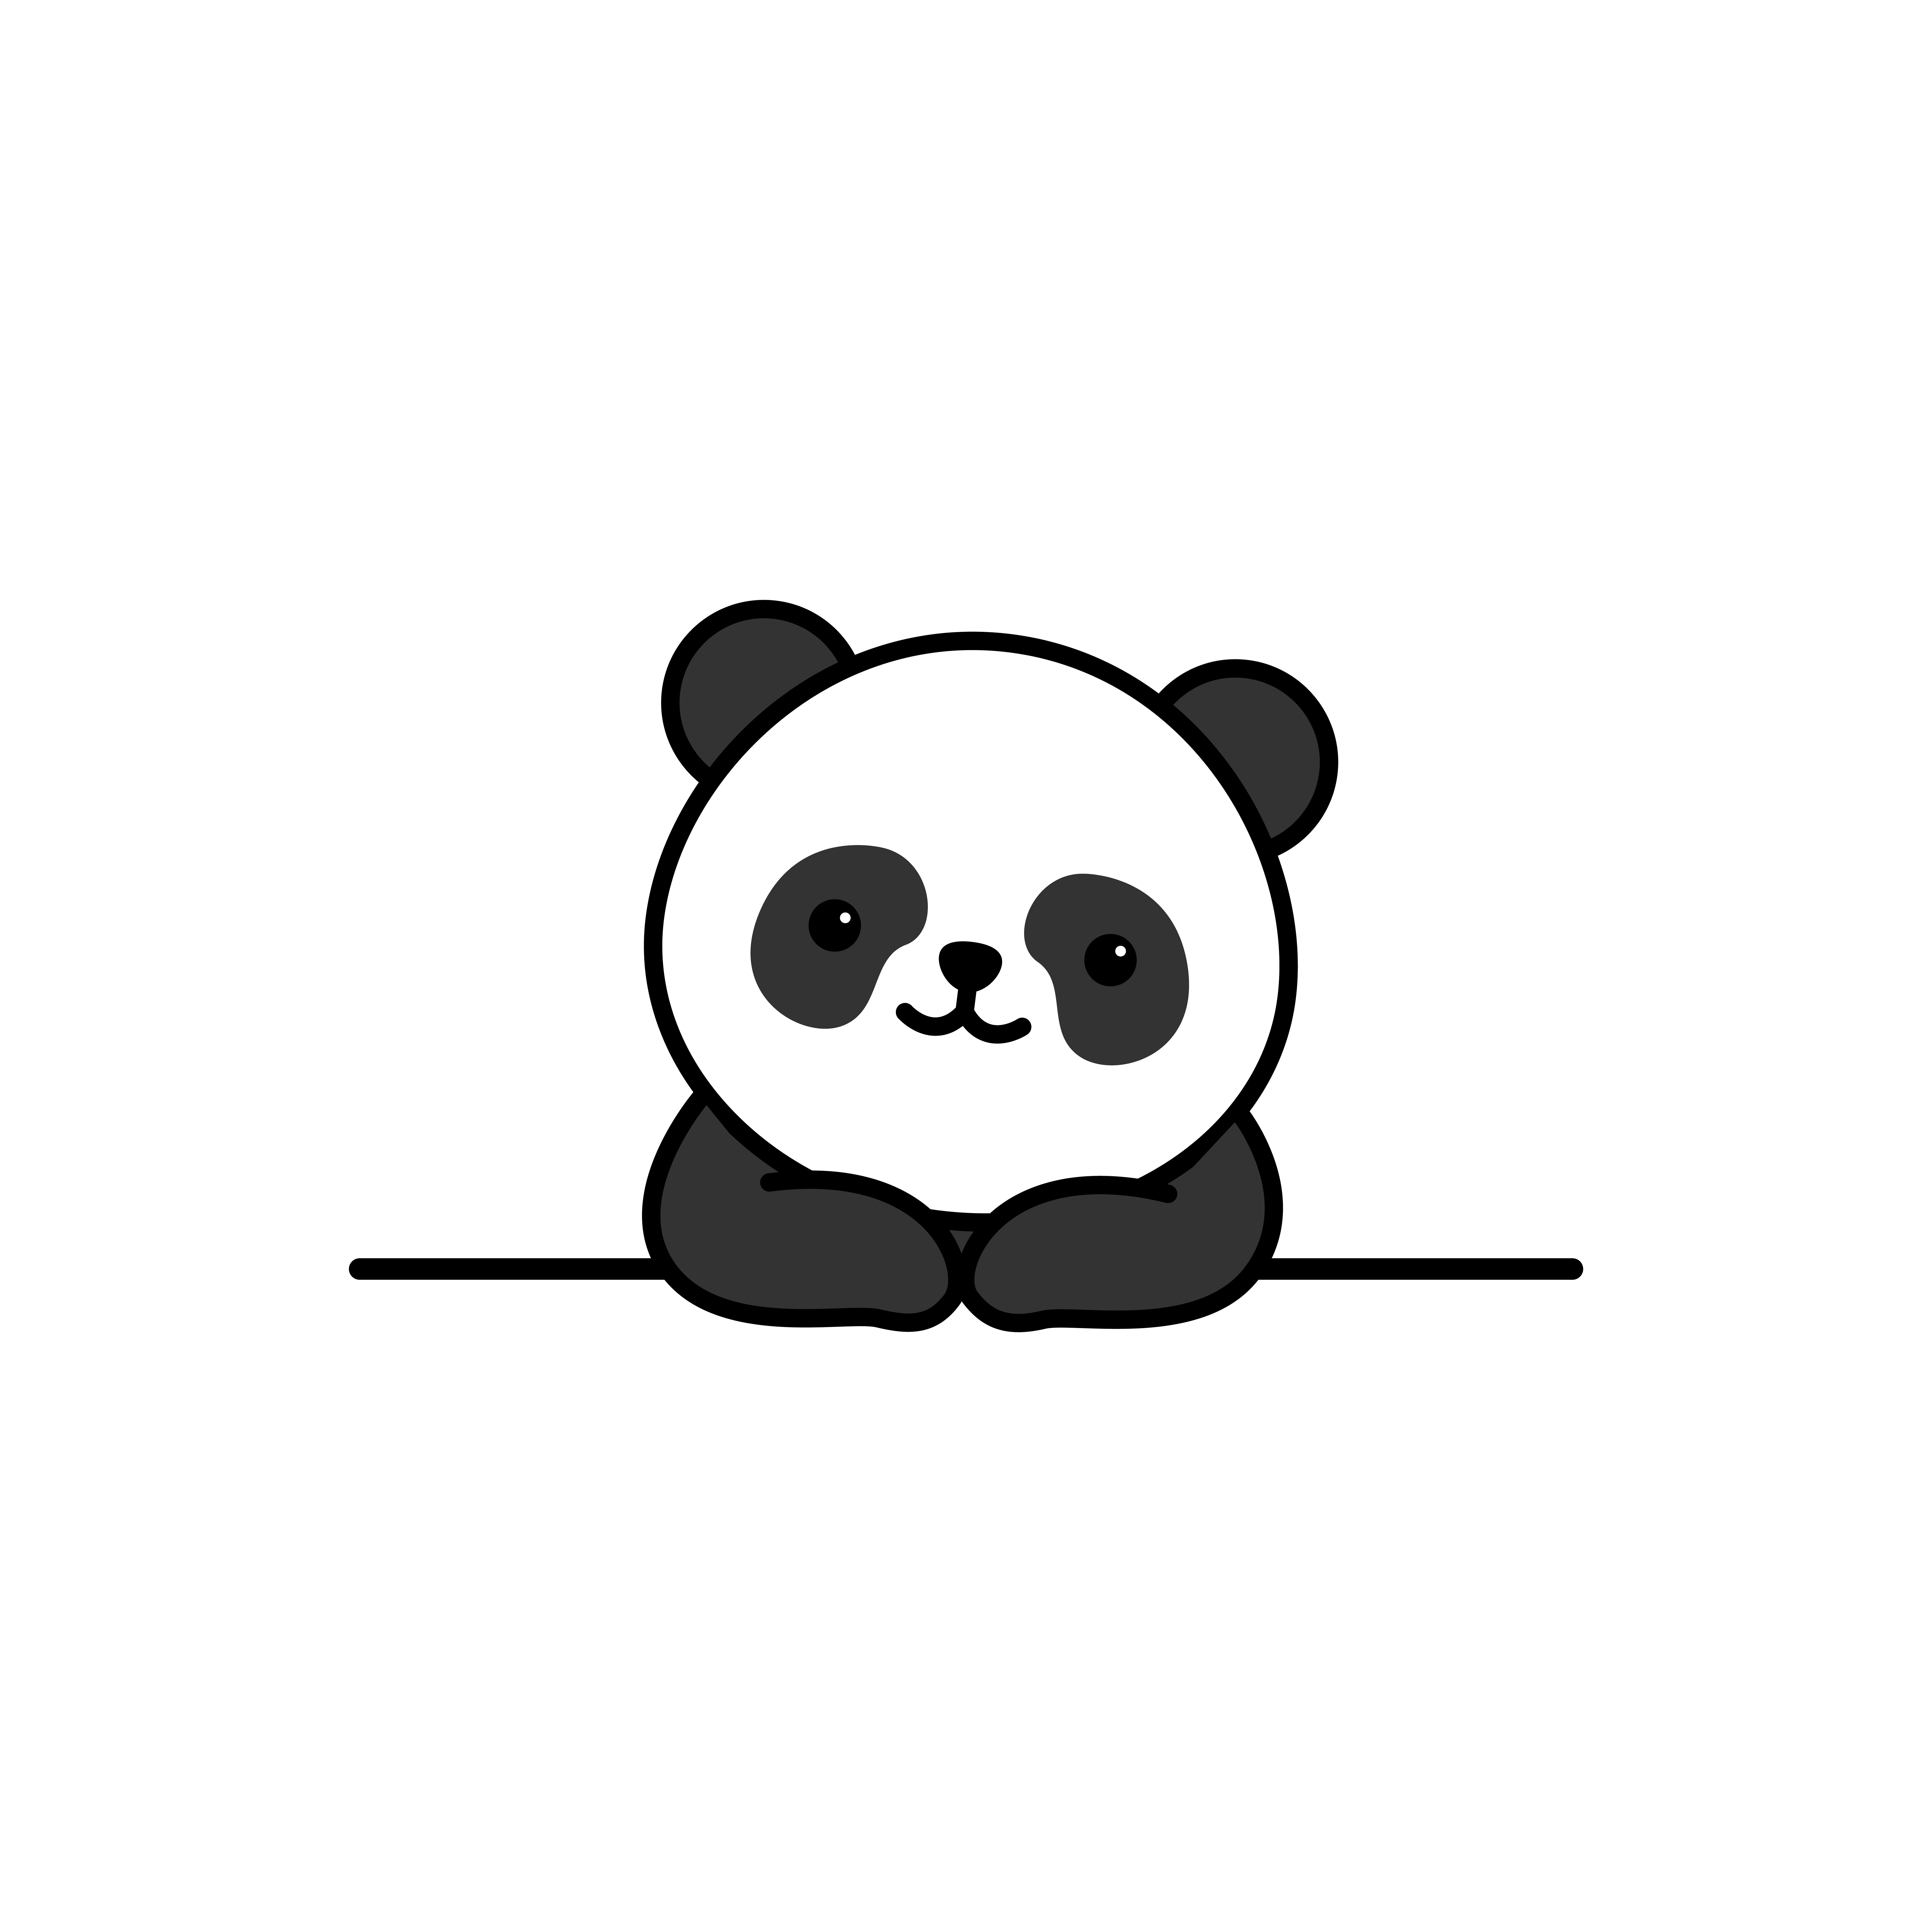 Cute panda leaning on wall cartoon 1339865 Vector Art at Vecteezy